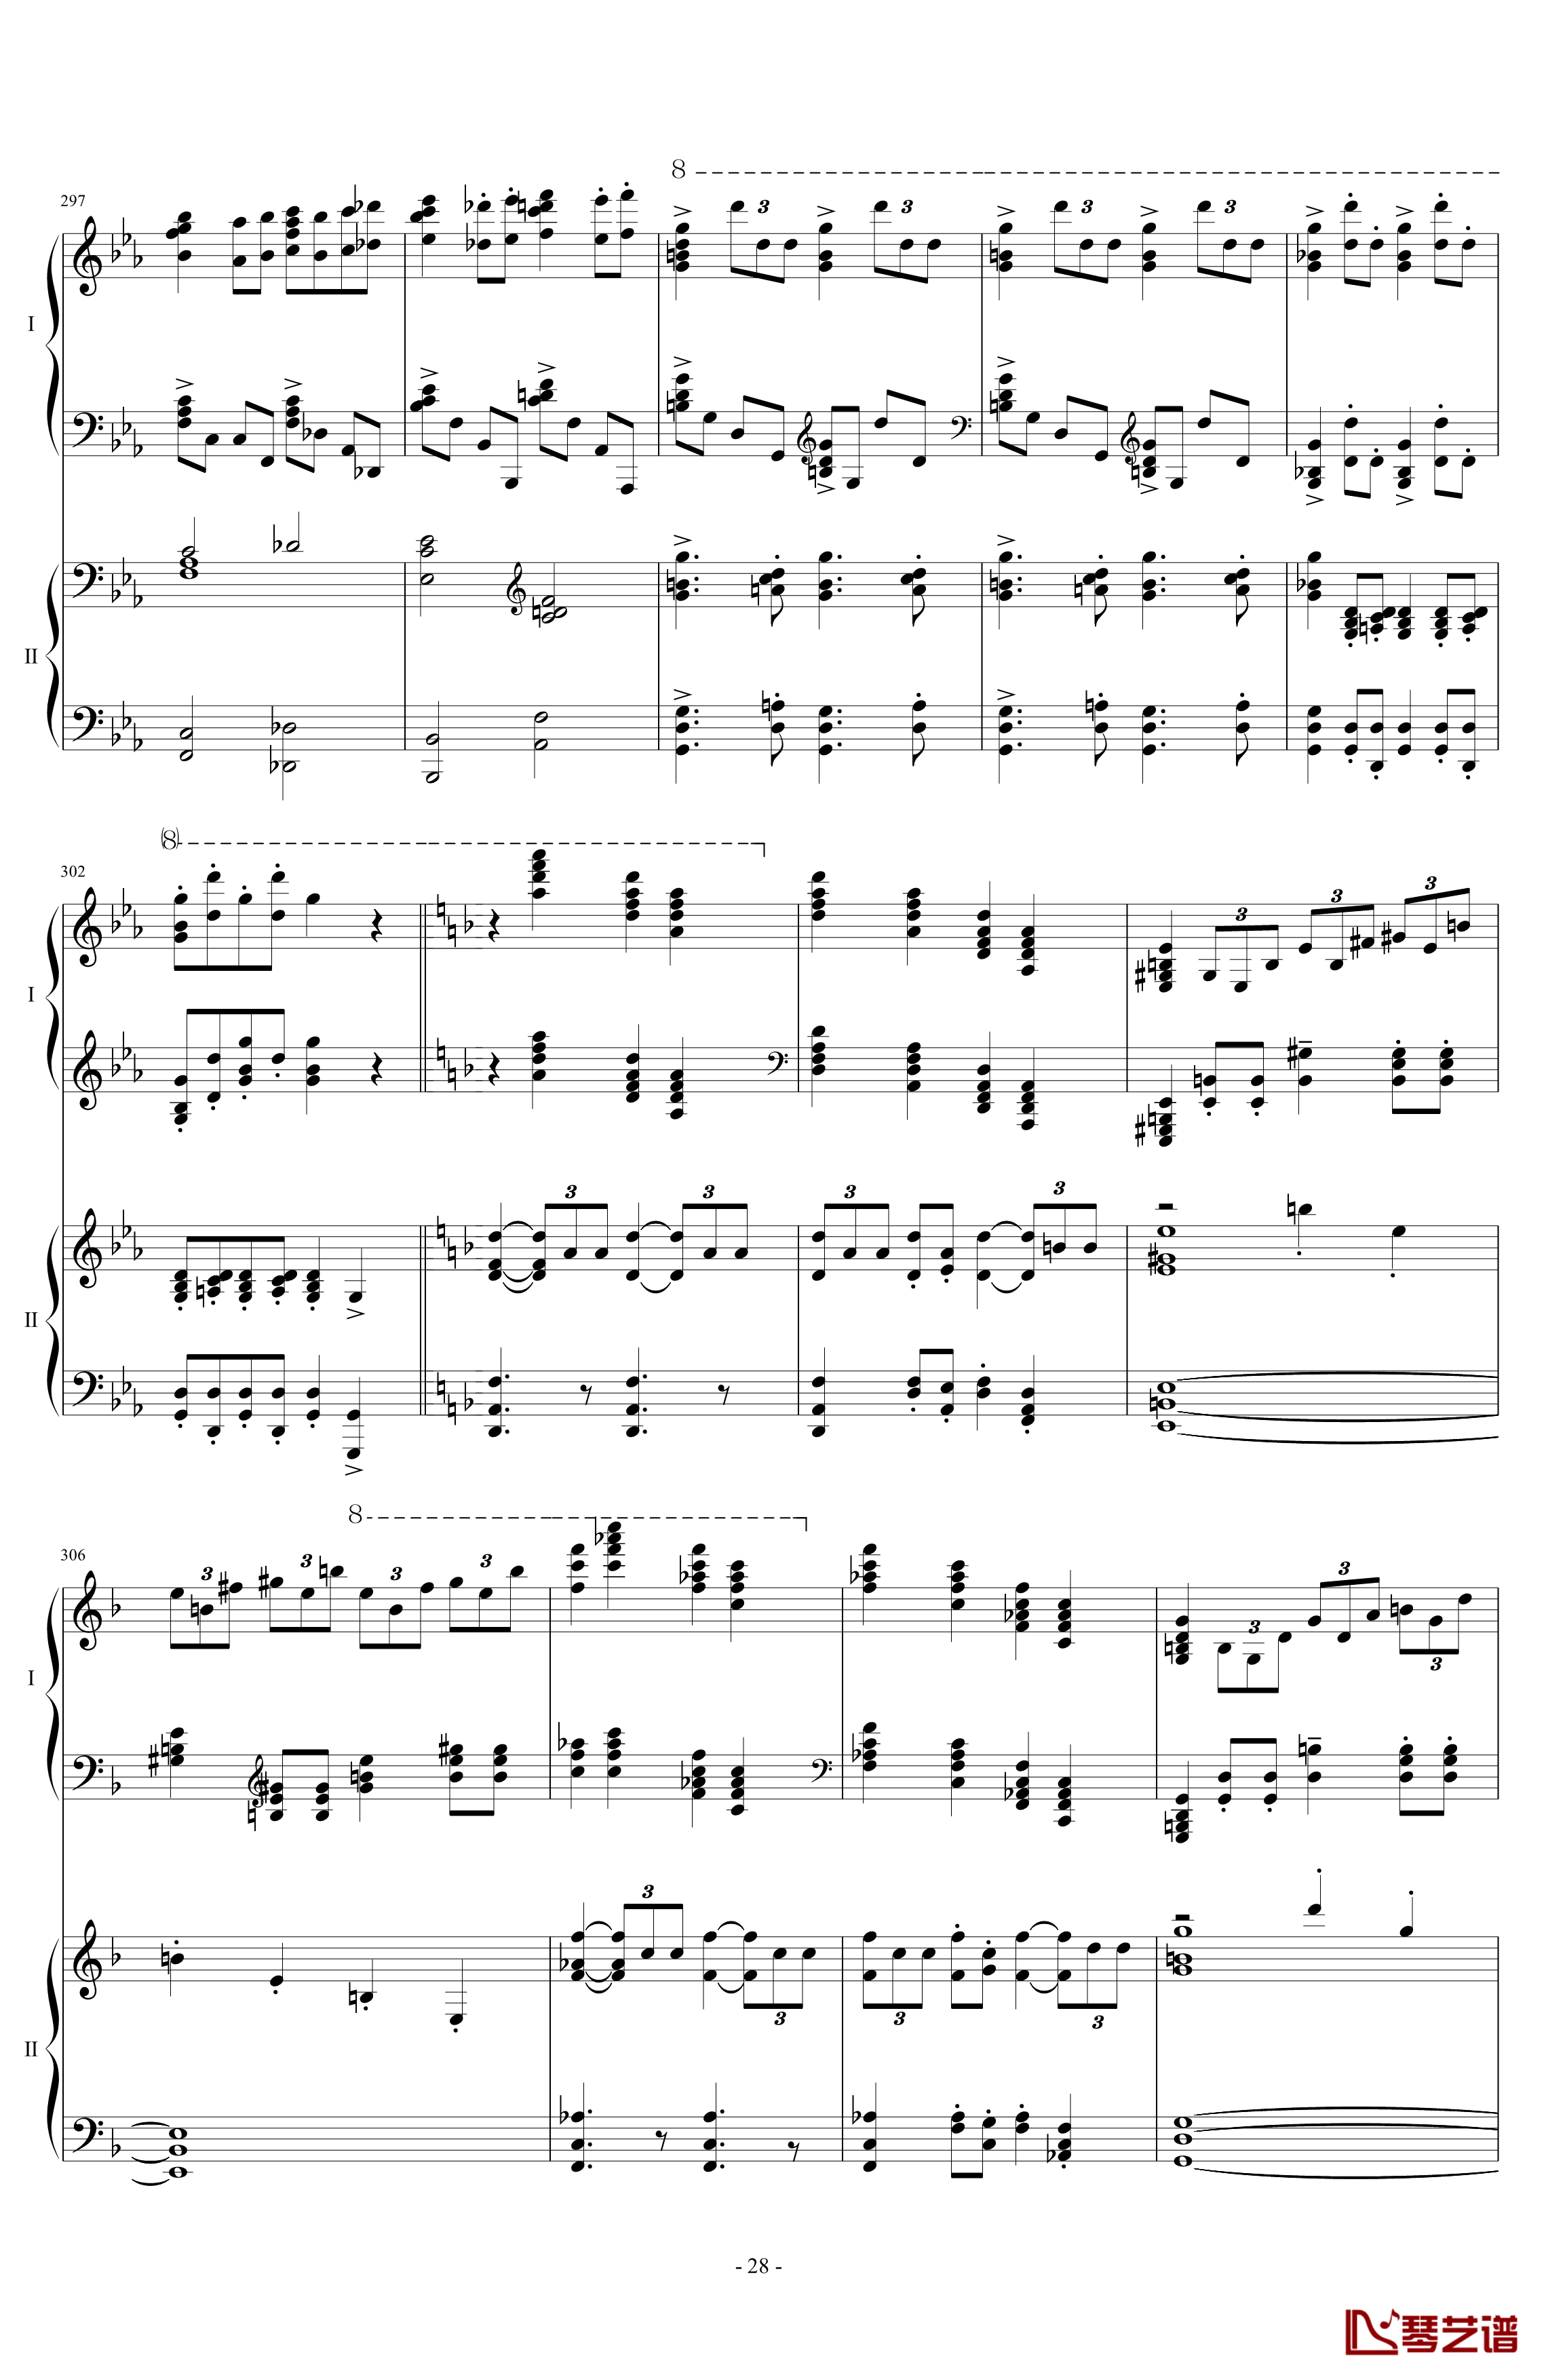 拉三第三乐章41页双钢琴钢琴谱-最难钢琴曲-拉赫马尼若夫28